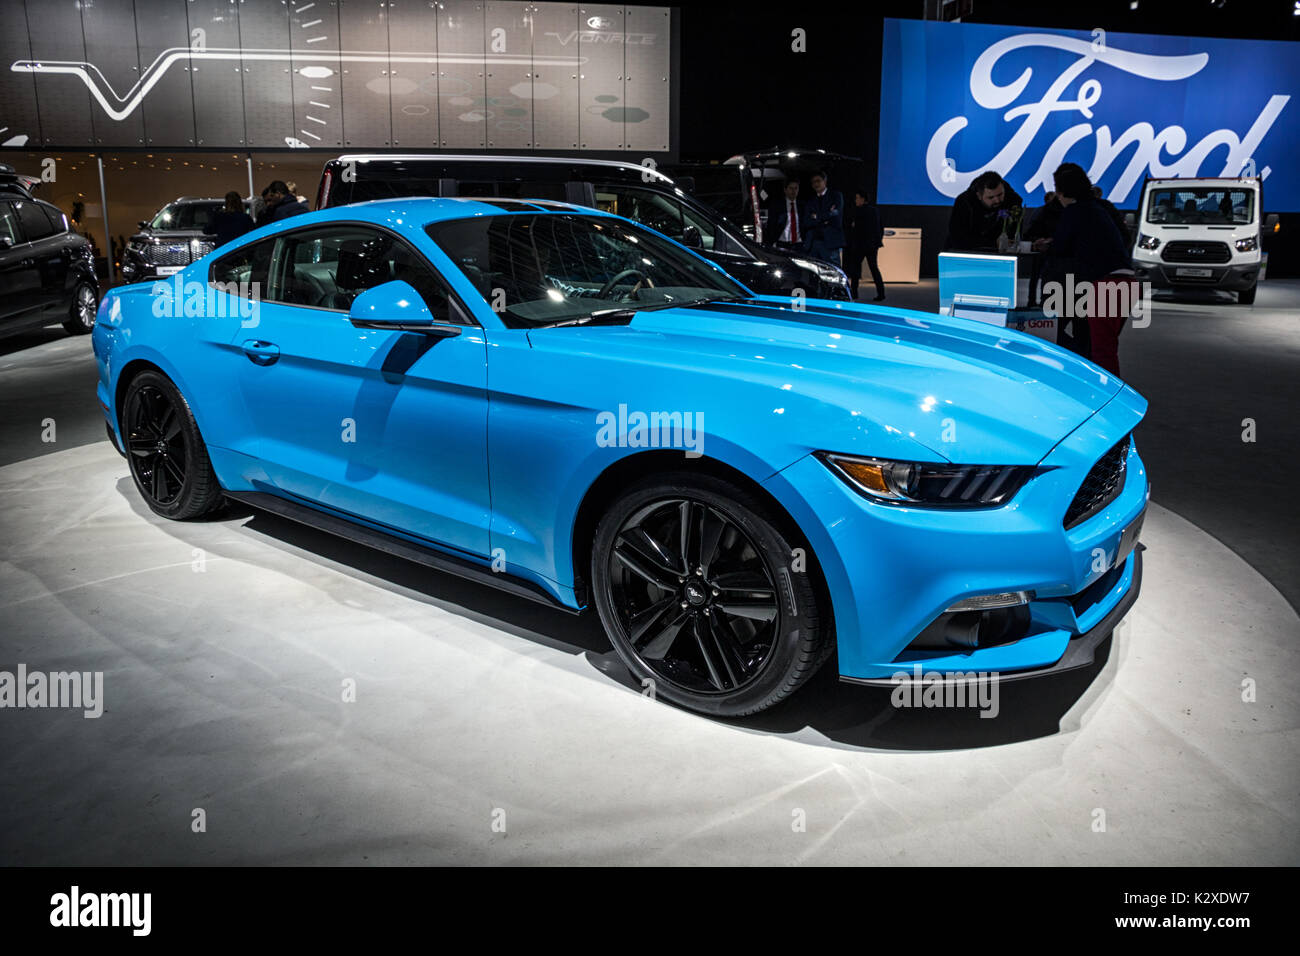 Bruxelles - Jan 19, 2017: Ford Mustang auto sportiva sul display al Motor Show di Bruxelles. Foto Stock